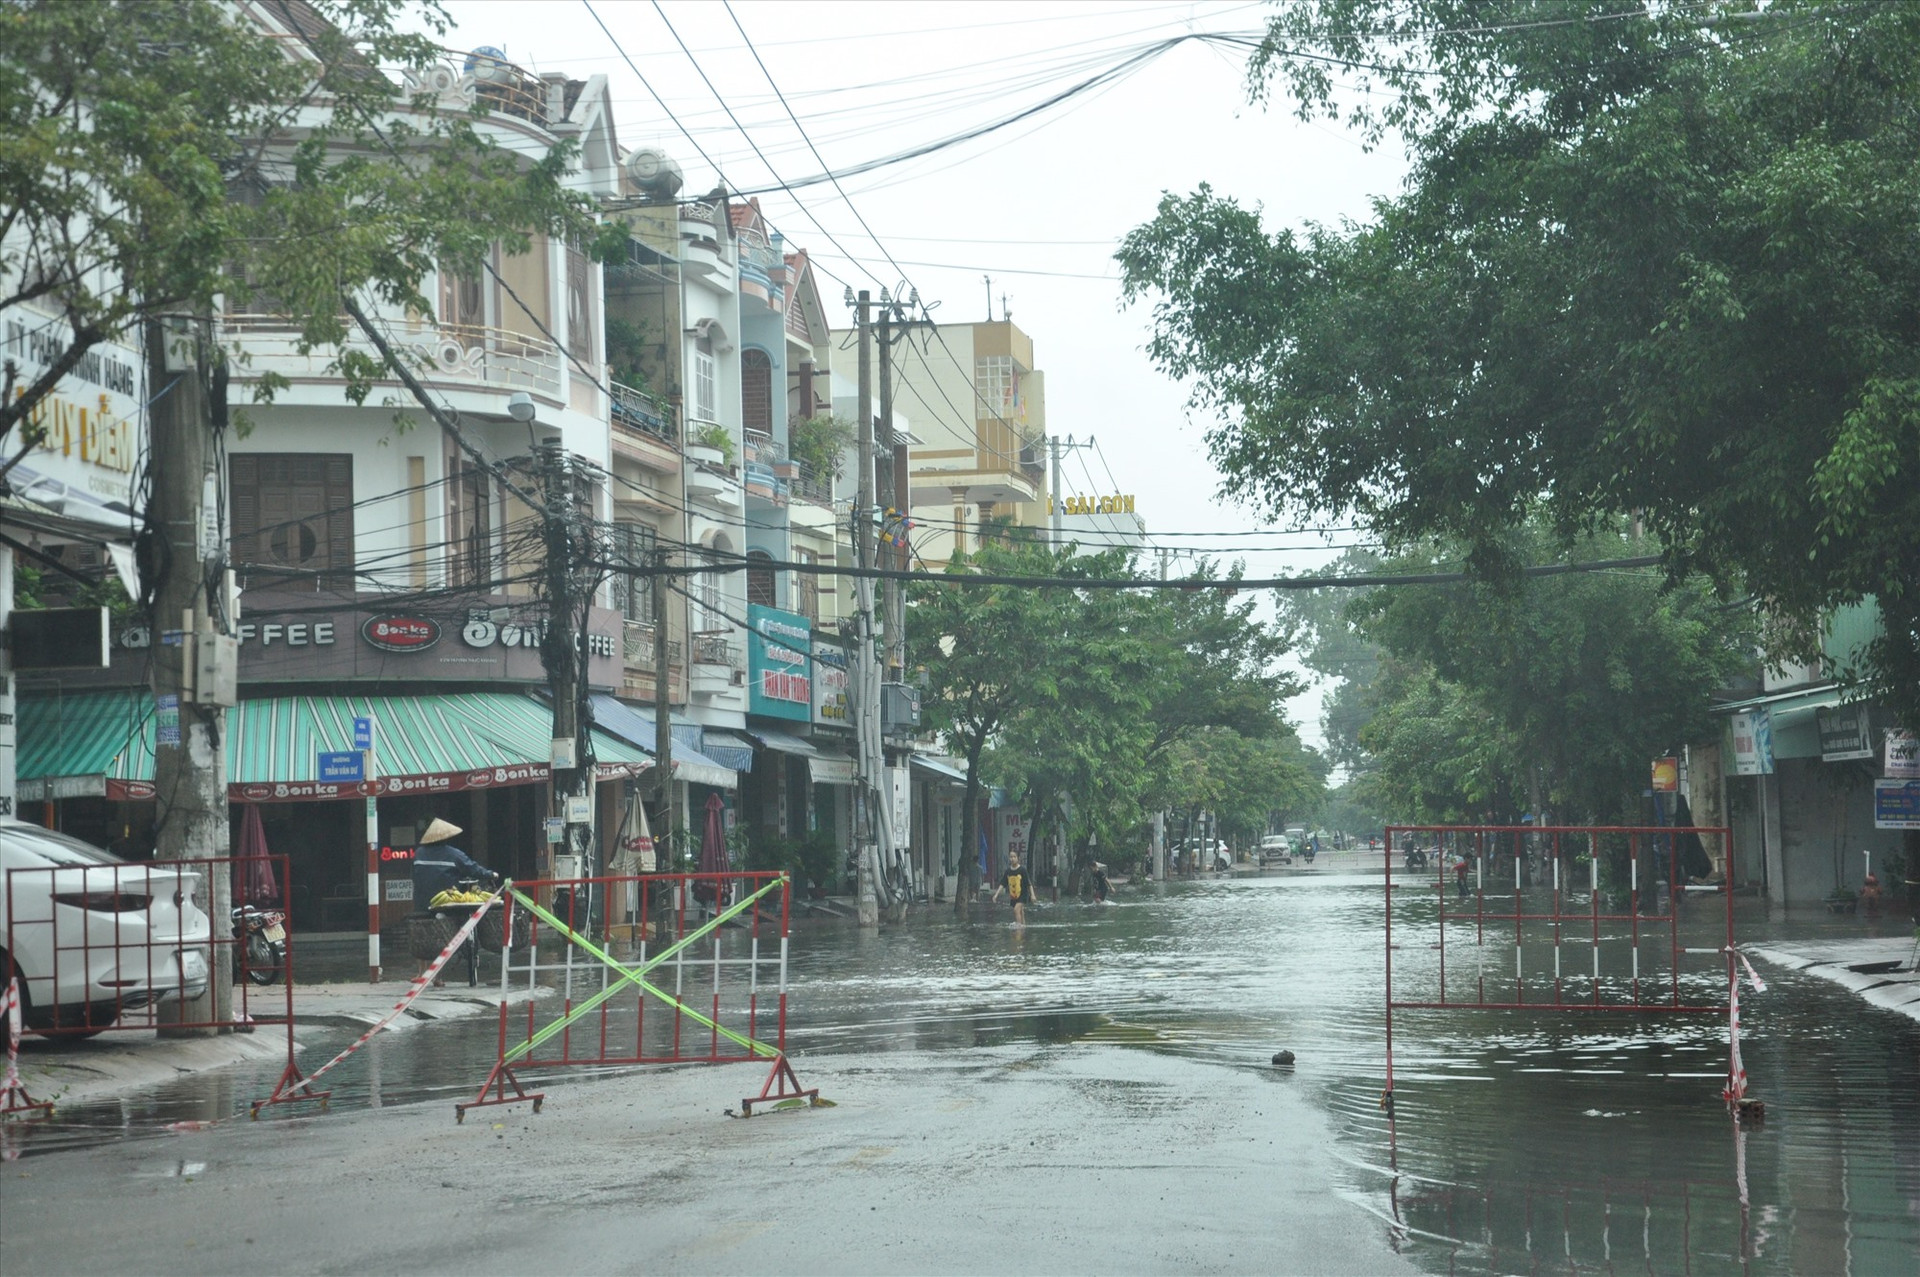 Khu vực nút Trần Văn Dư - Huỳnh Thúc Kháng rất cần cải tạo, nâng cấp mặt đường, thoát nước, tránh tình trạng ngập úng vào mùa mưa lụt. Ảnh: X.P